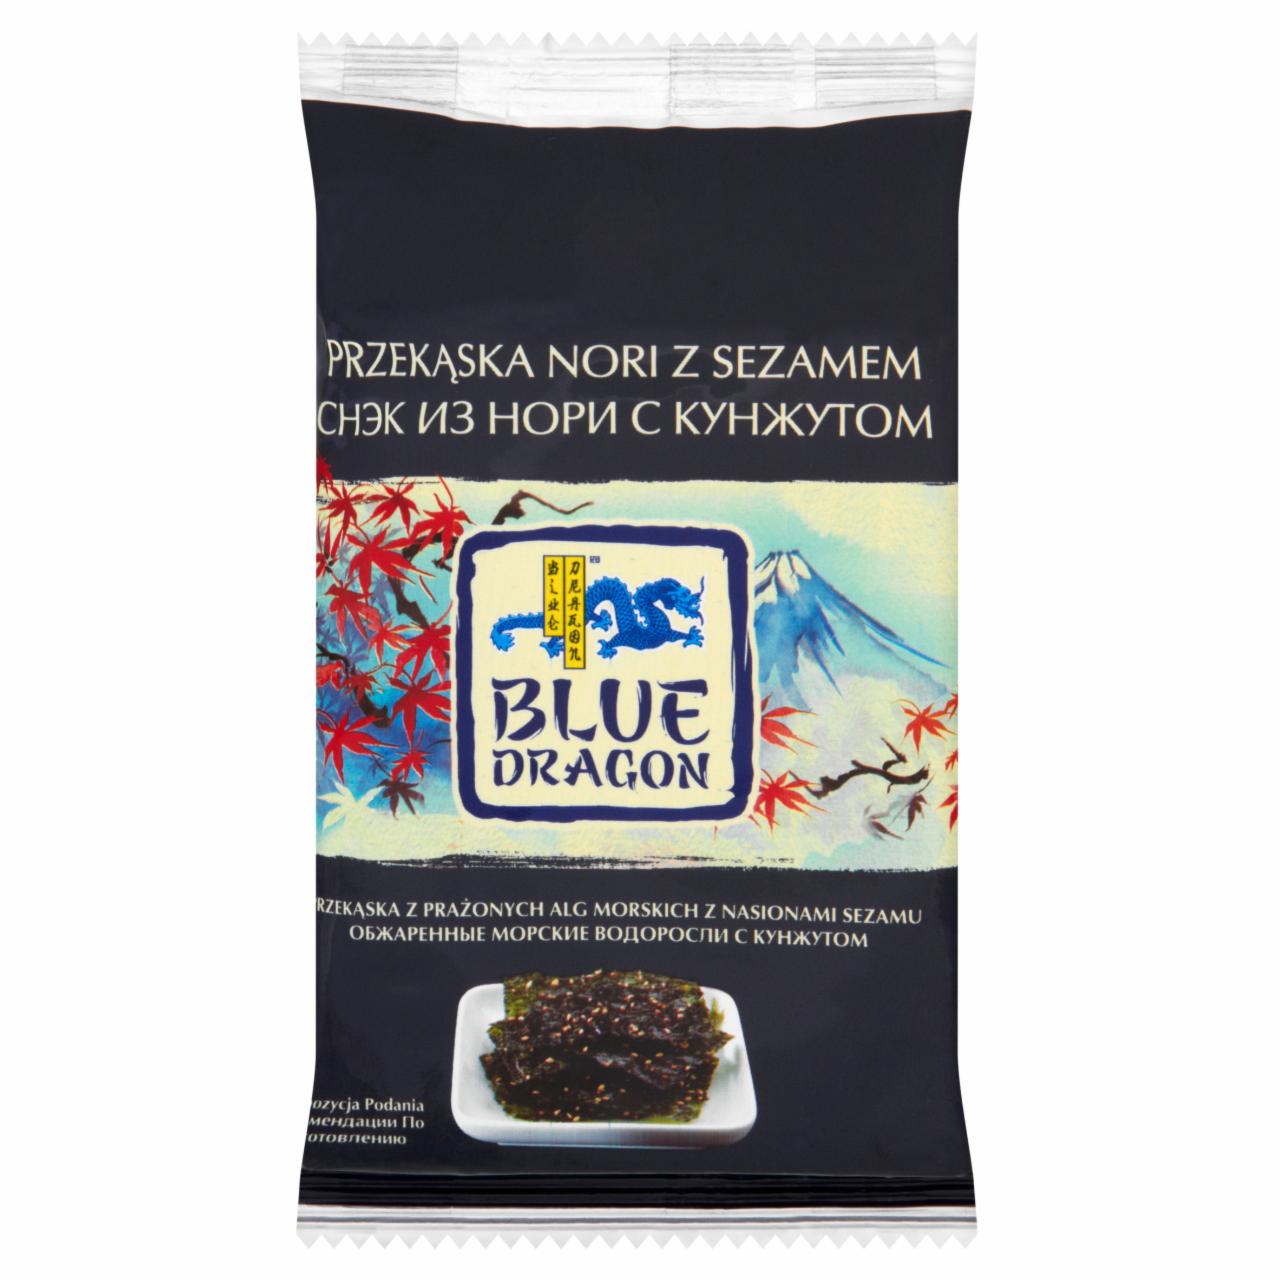 Zdjęcia - Blue Dragon Przekąska nori z sezamem 4,5 g